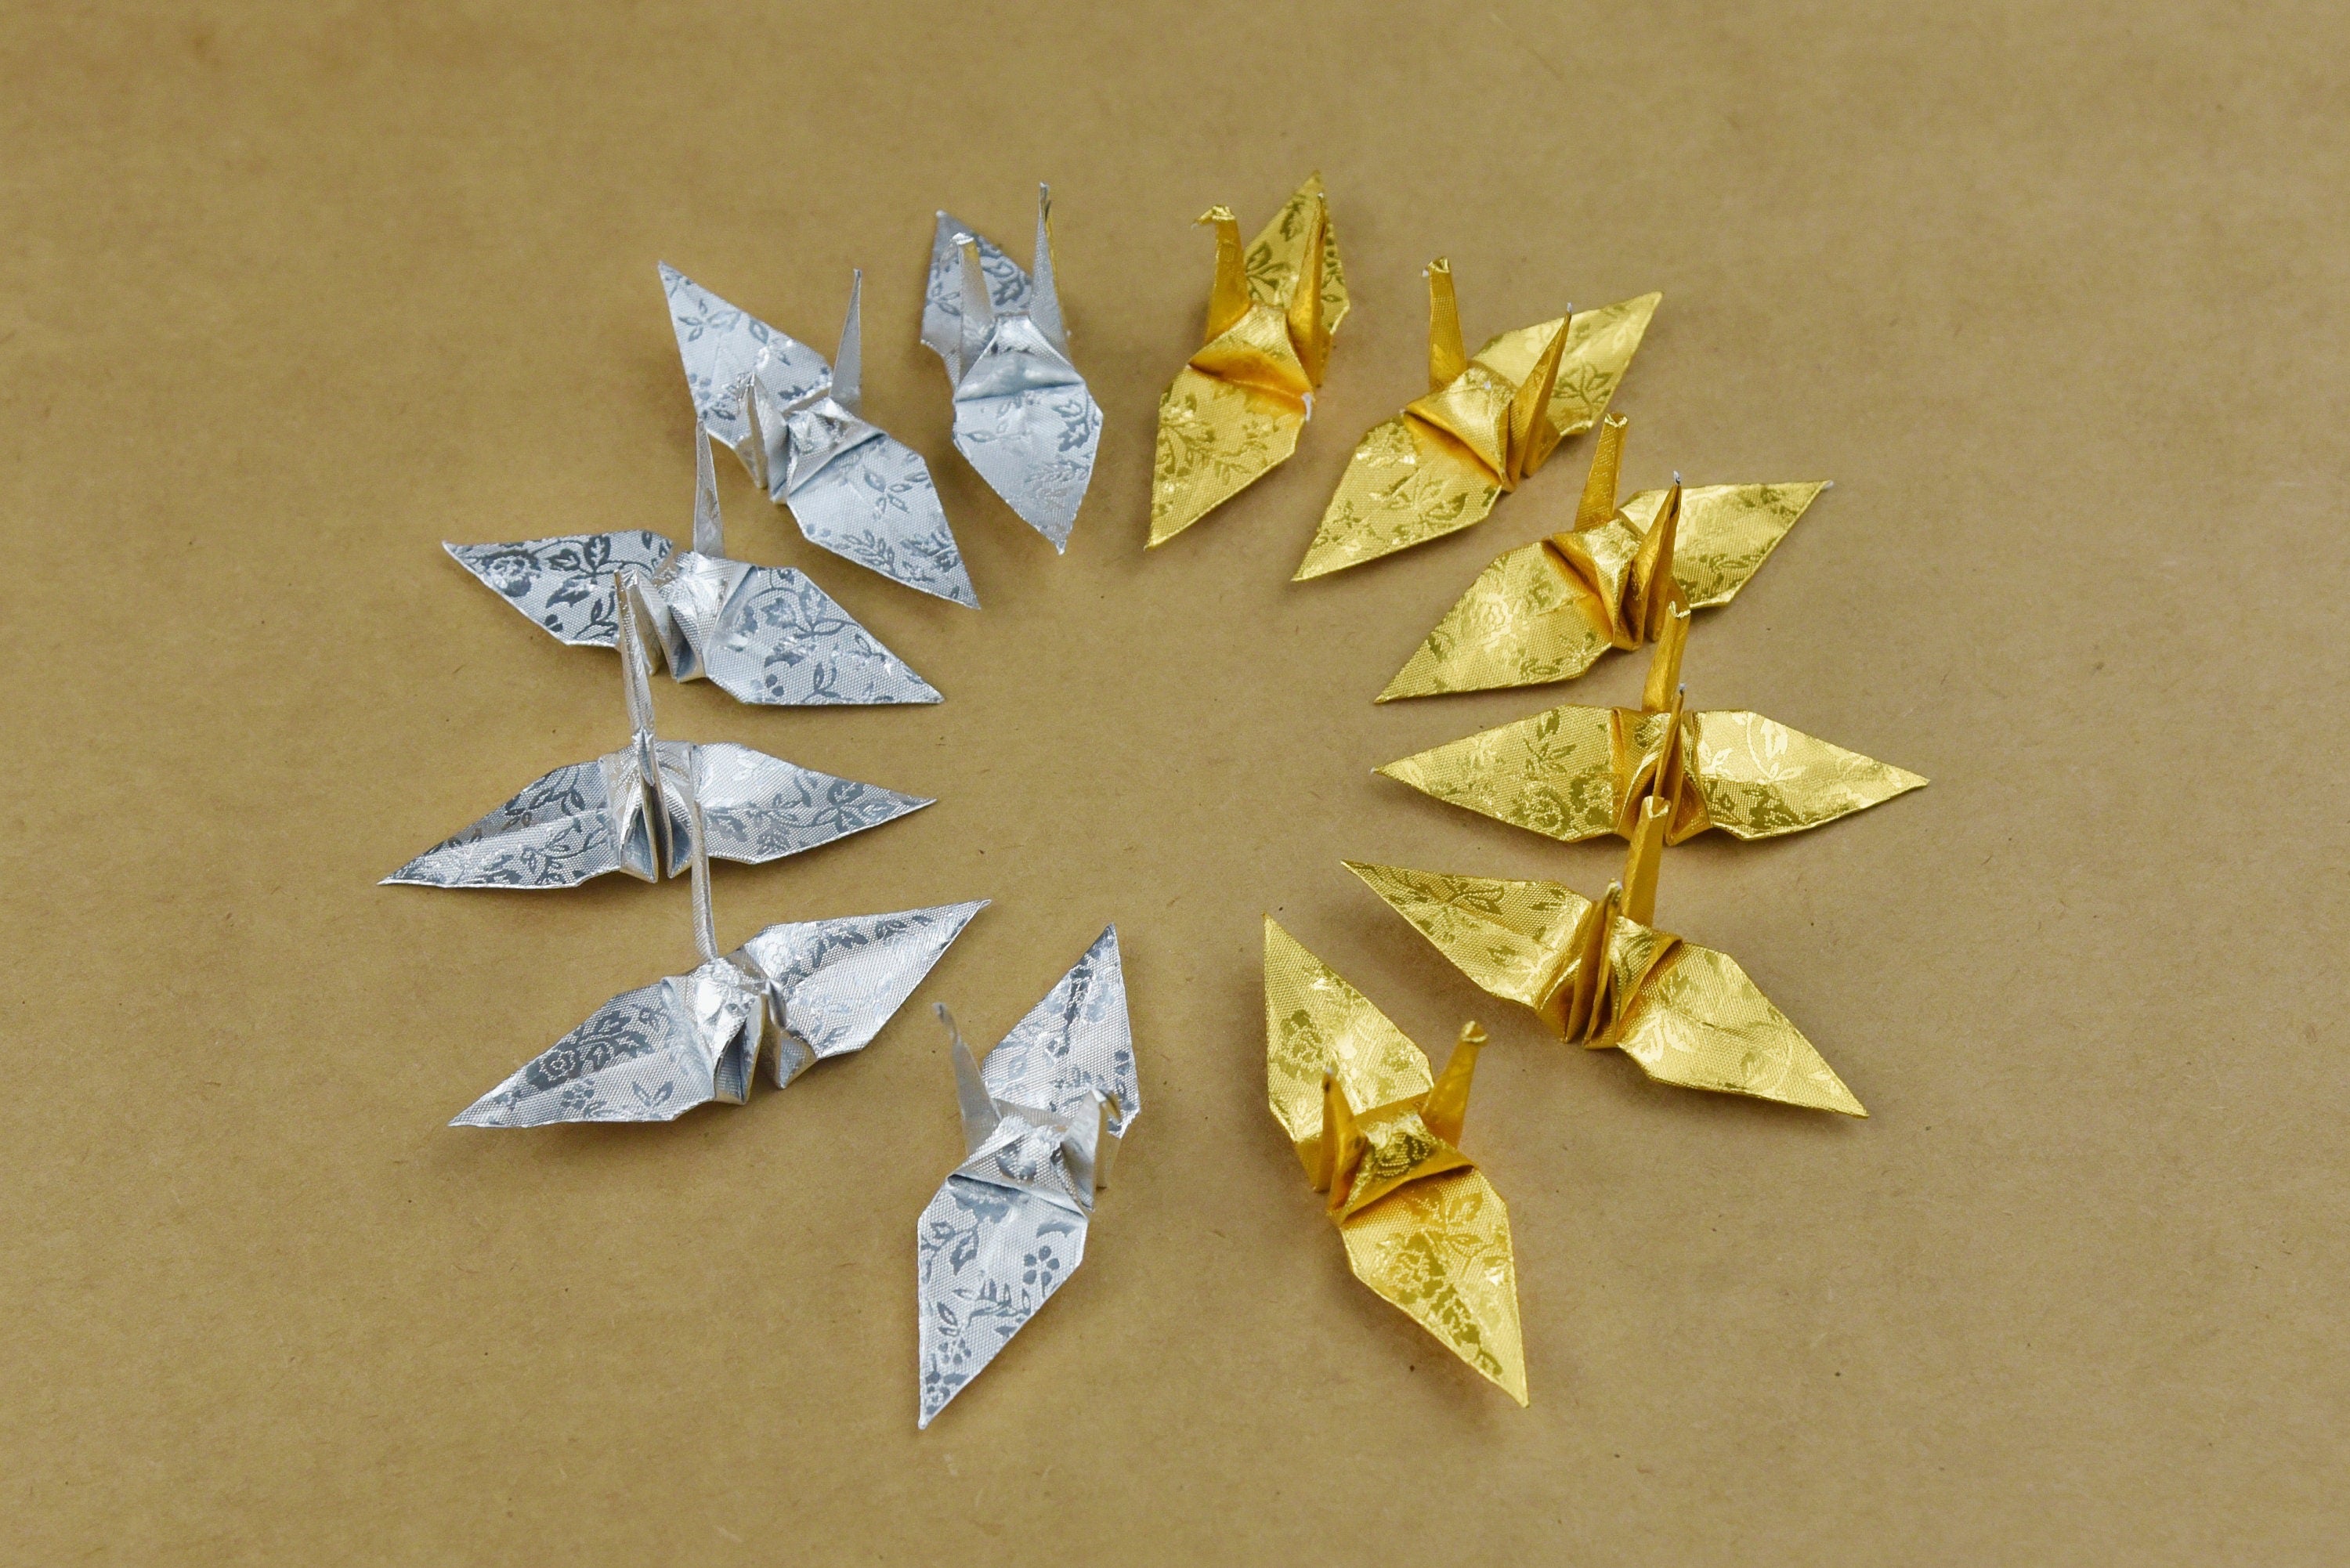 100 gru origami - oro e argento con motivo a rose - 7,5 cm (3 pollici) - per decorazioni di nozze, matrimoni giapponesi